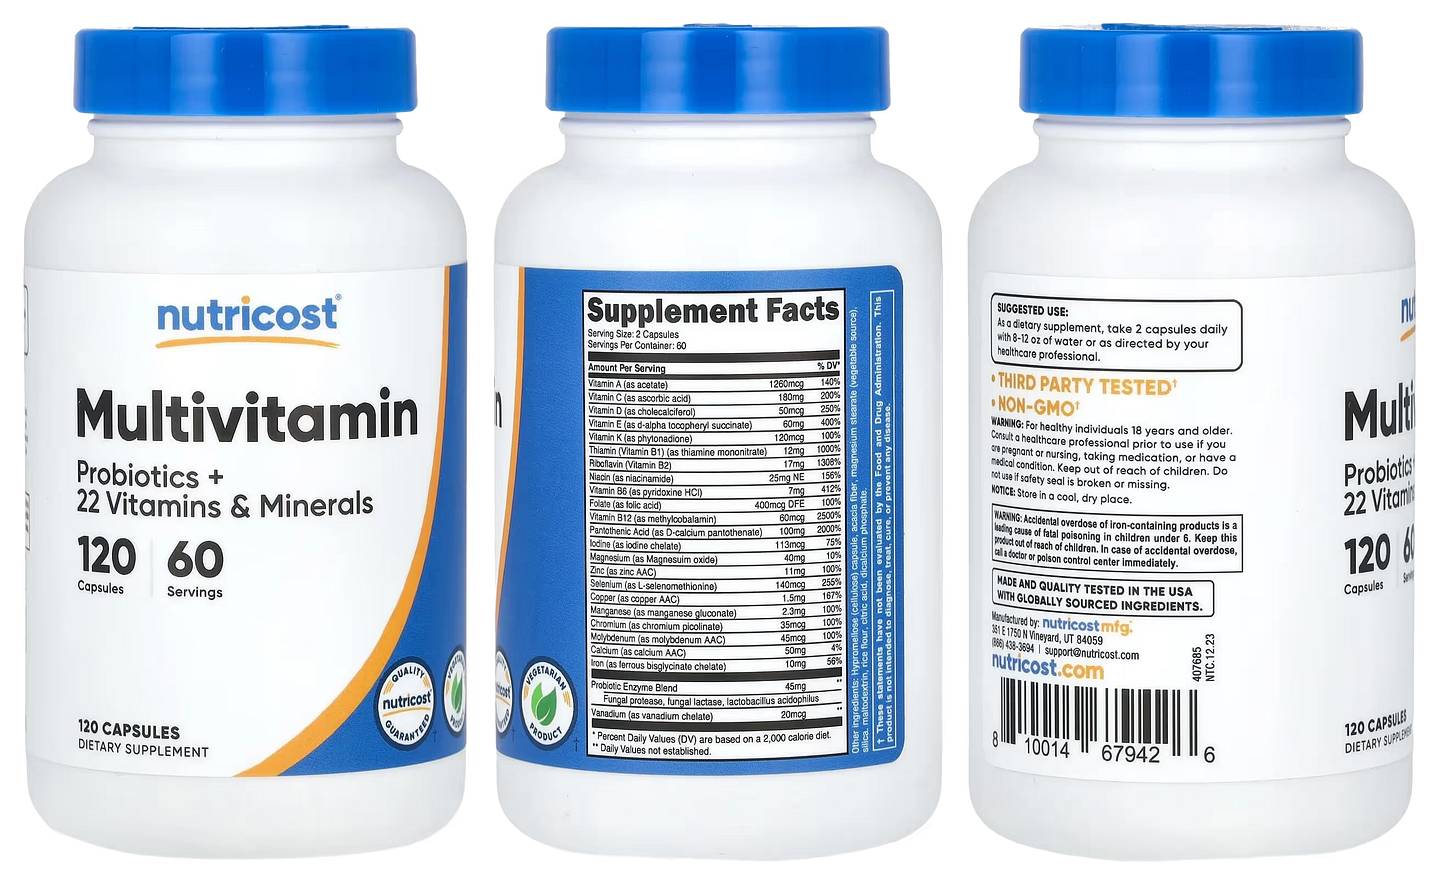 Nutricost, Multivitamin, Probiotics + 22 Vitamins & Minerals packaging